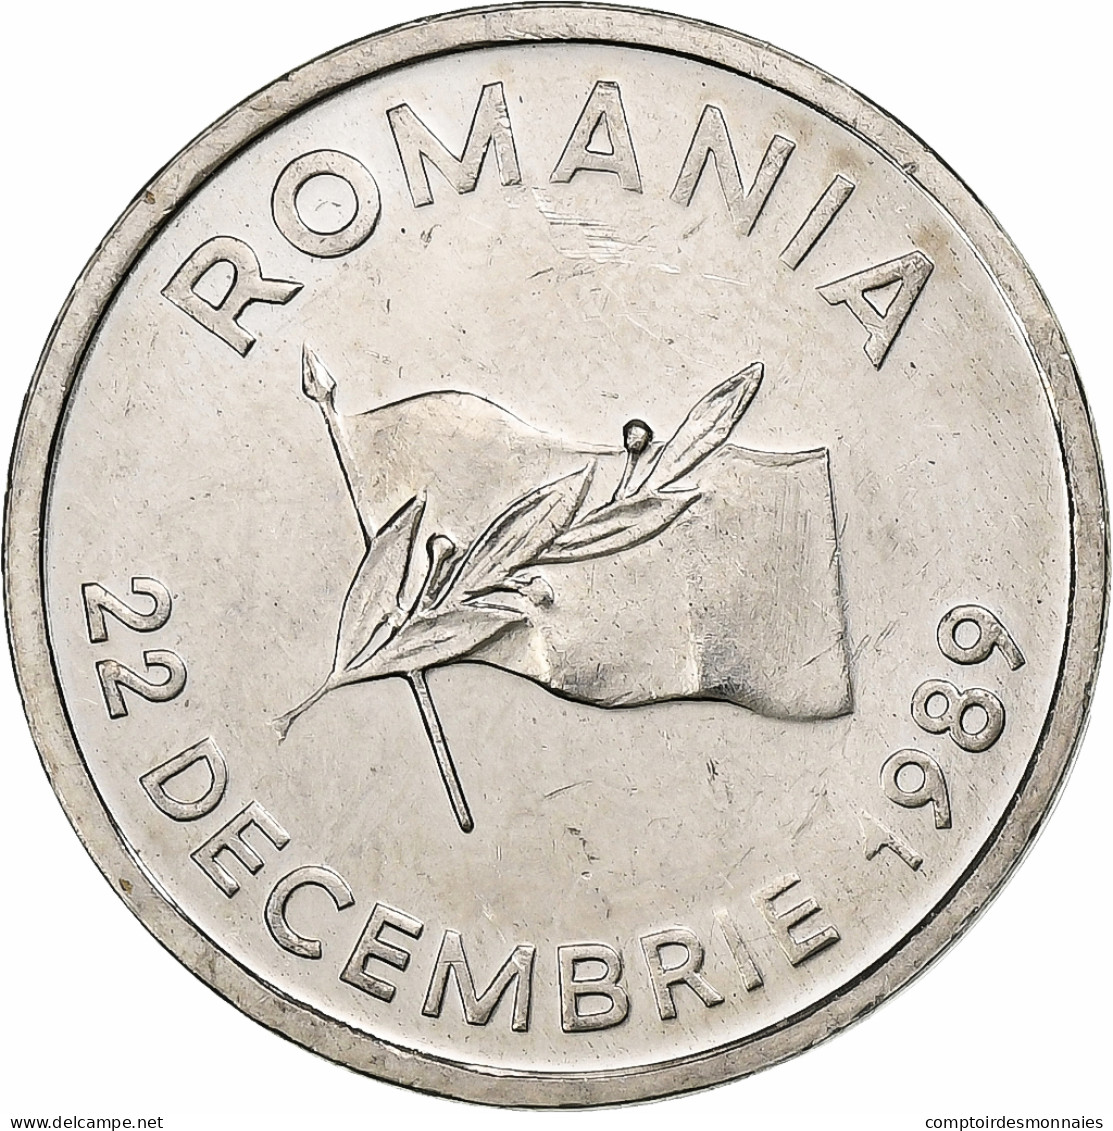 Roumanie, 10 Lei, 1992, Nickel Clad Steel, SUP, KM:108 - Roumanie